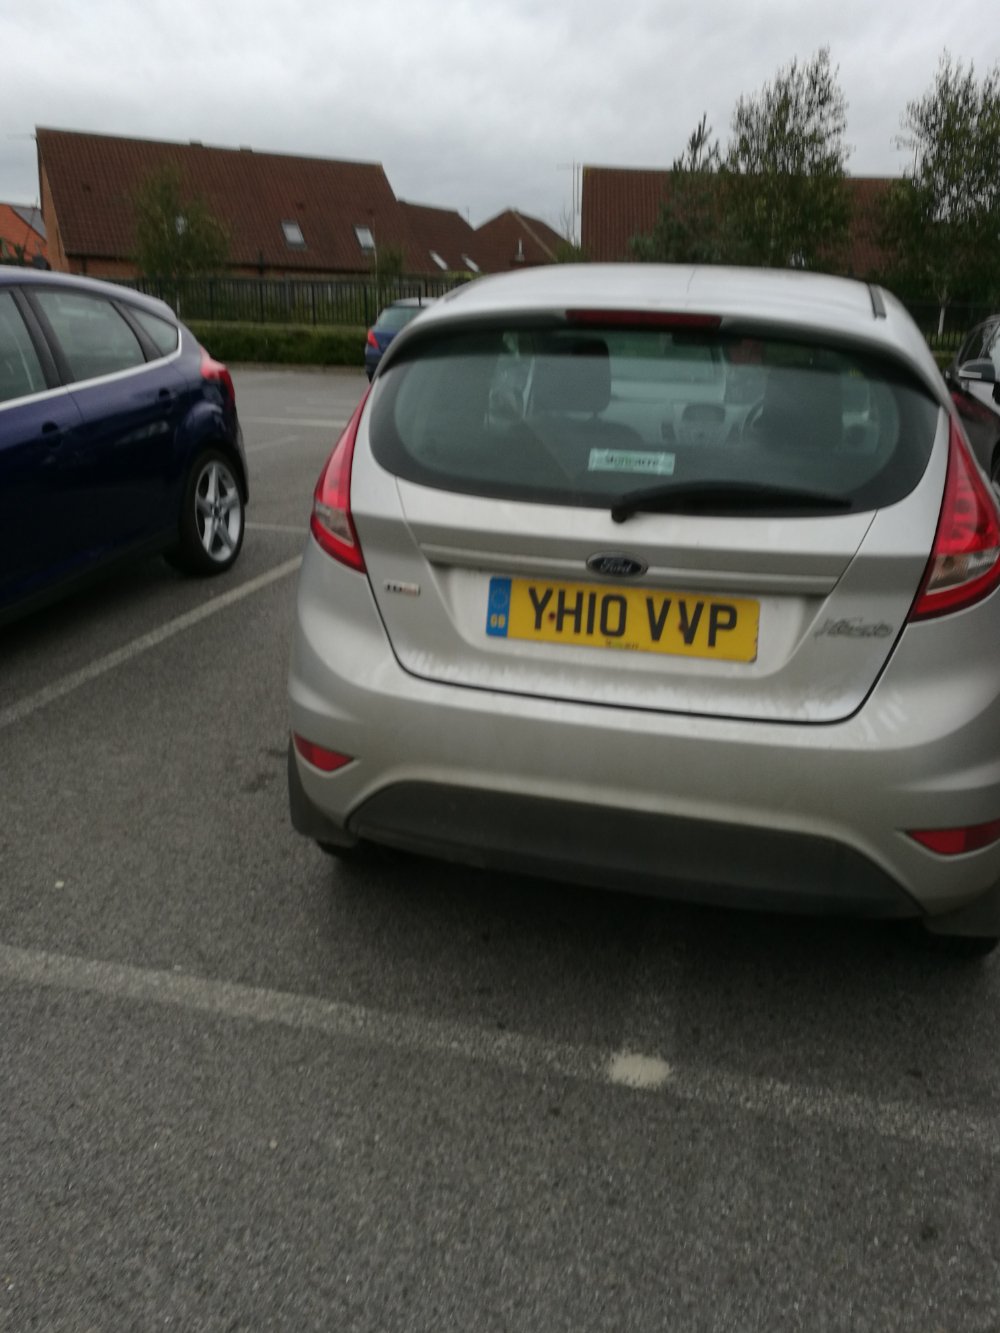 YH10 VVP is a crap parker